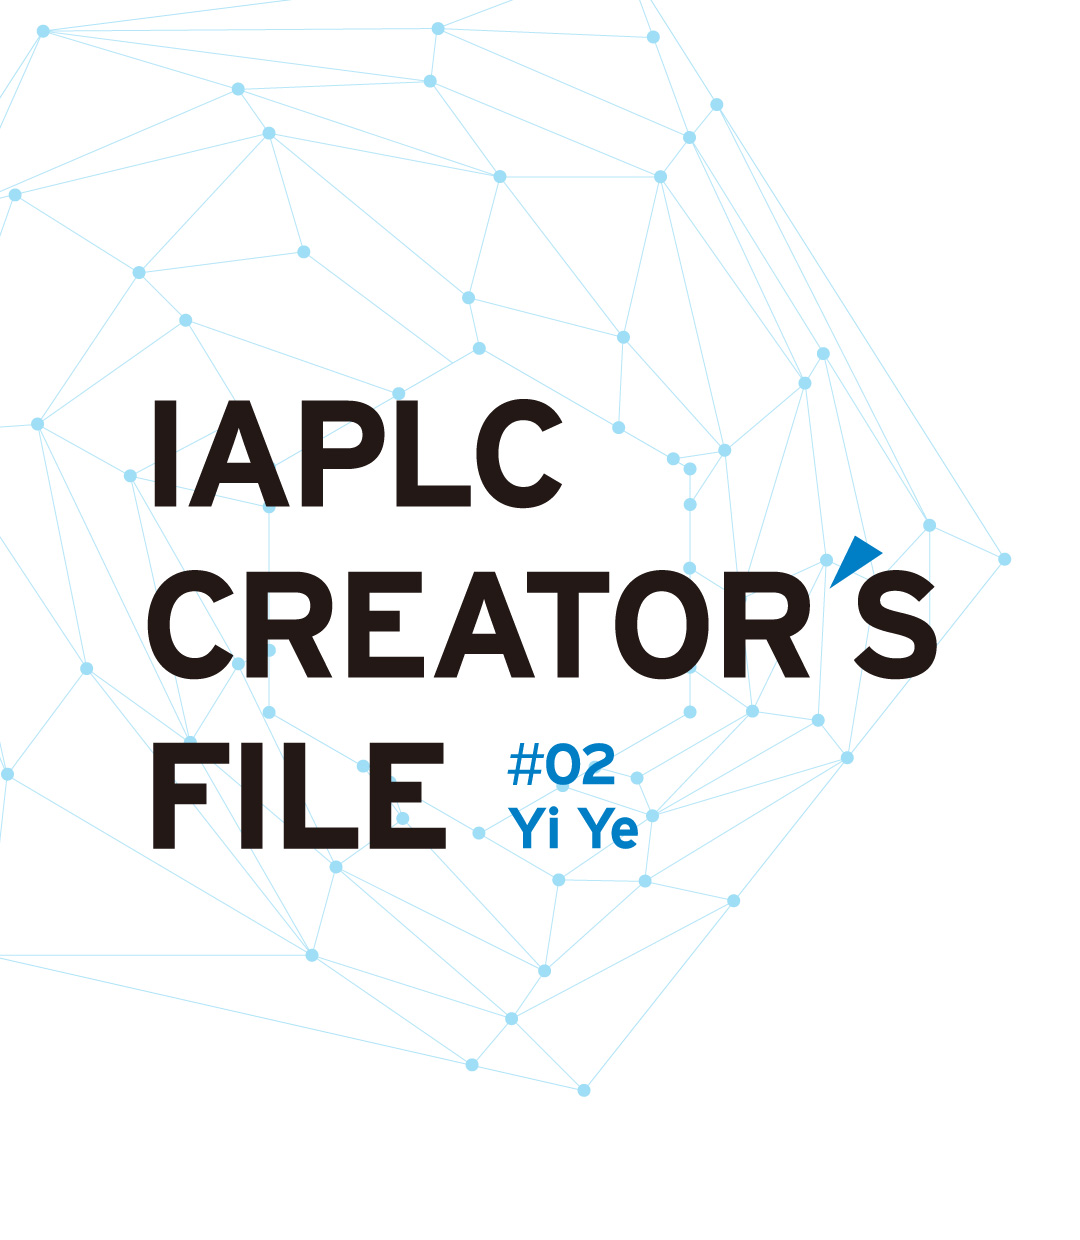 IAPLC CREATOR’S FILE #02 叶毅